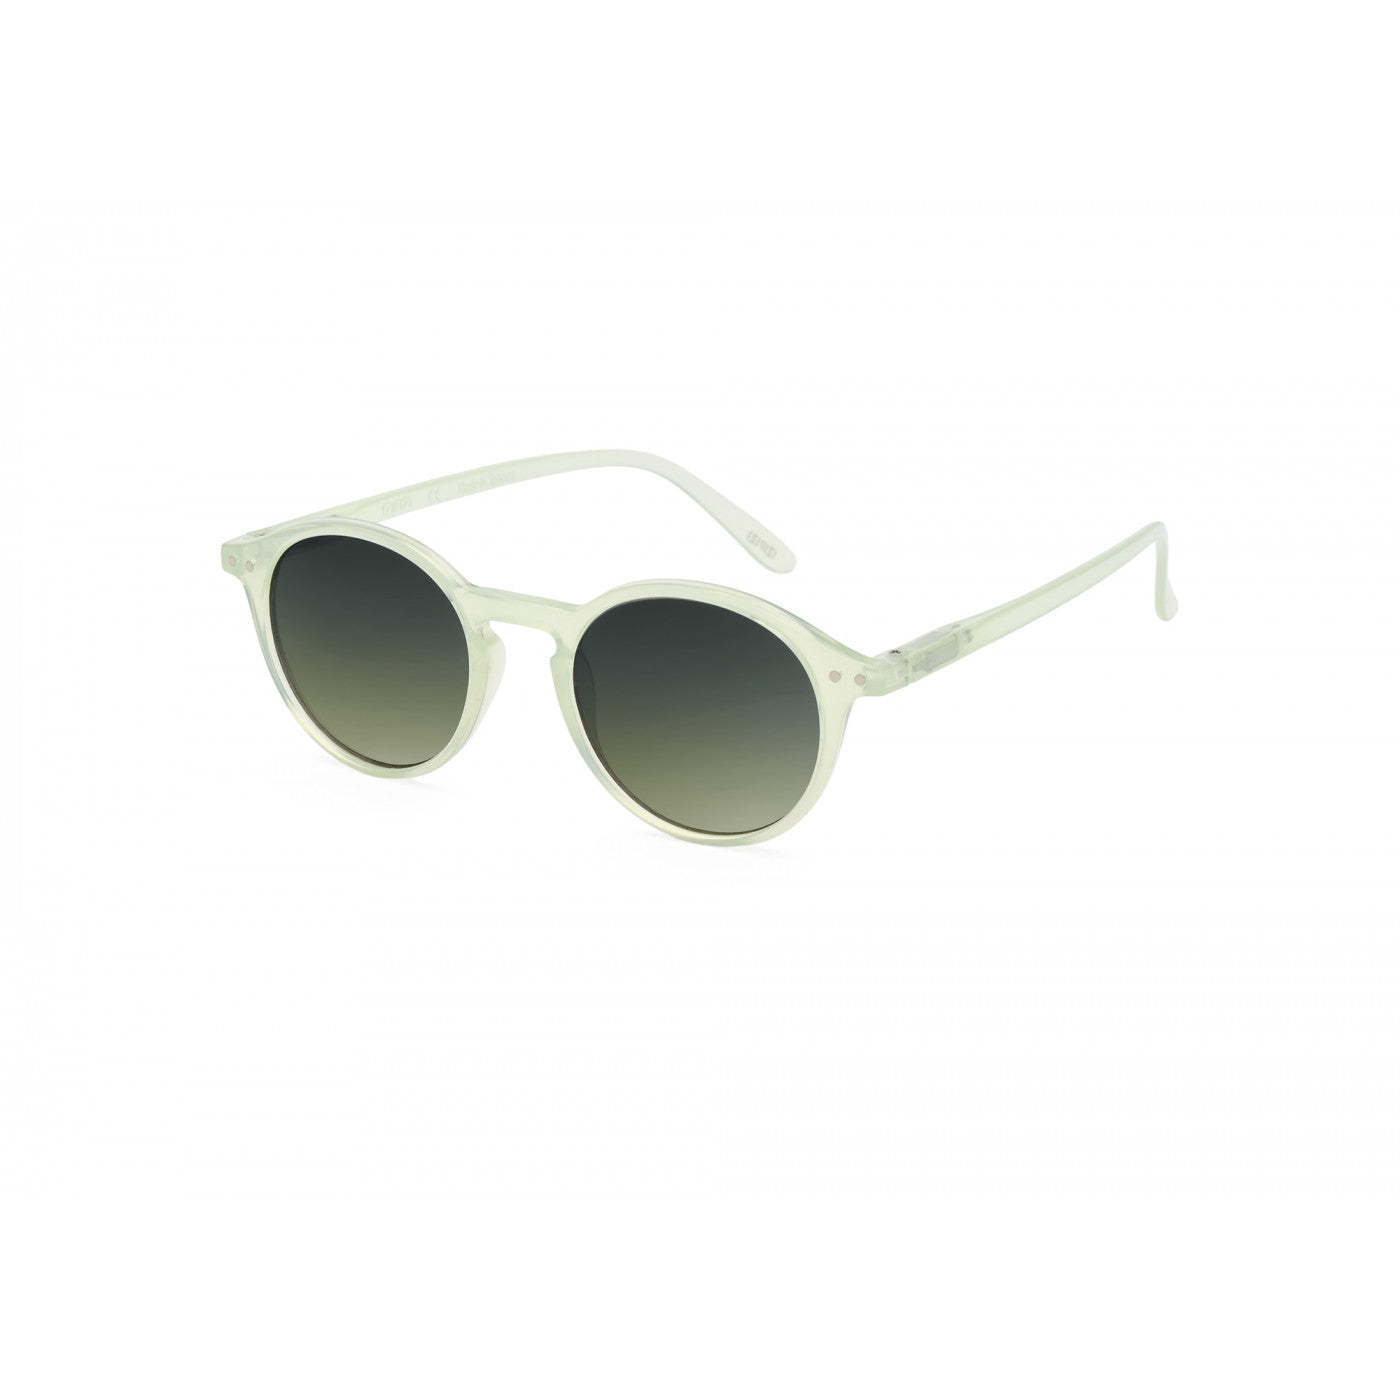 Sunglasses  - #M Quiet Green